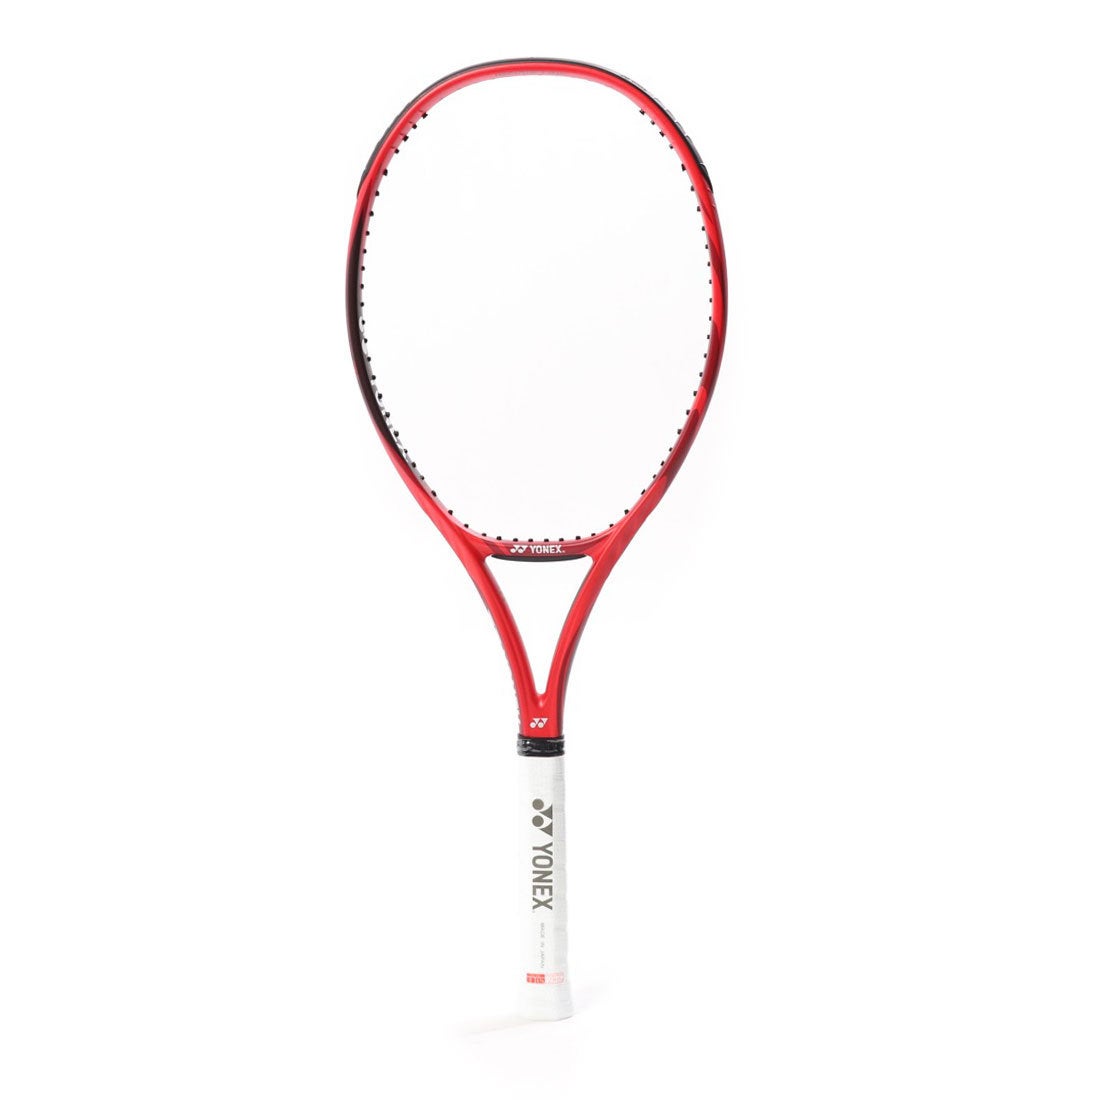 ヨネックス YONEX 硬式テニス 未張りラケット Vコア100(LG) 18VC100